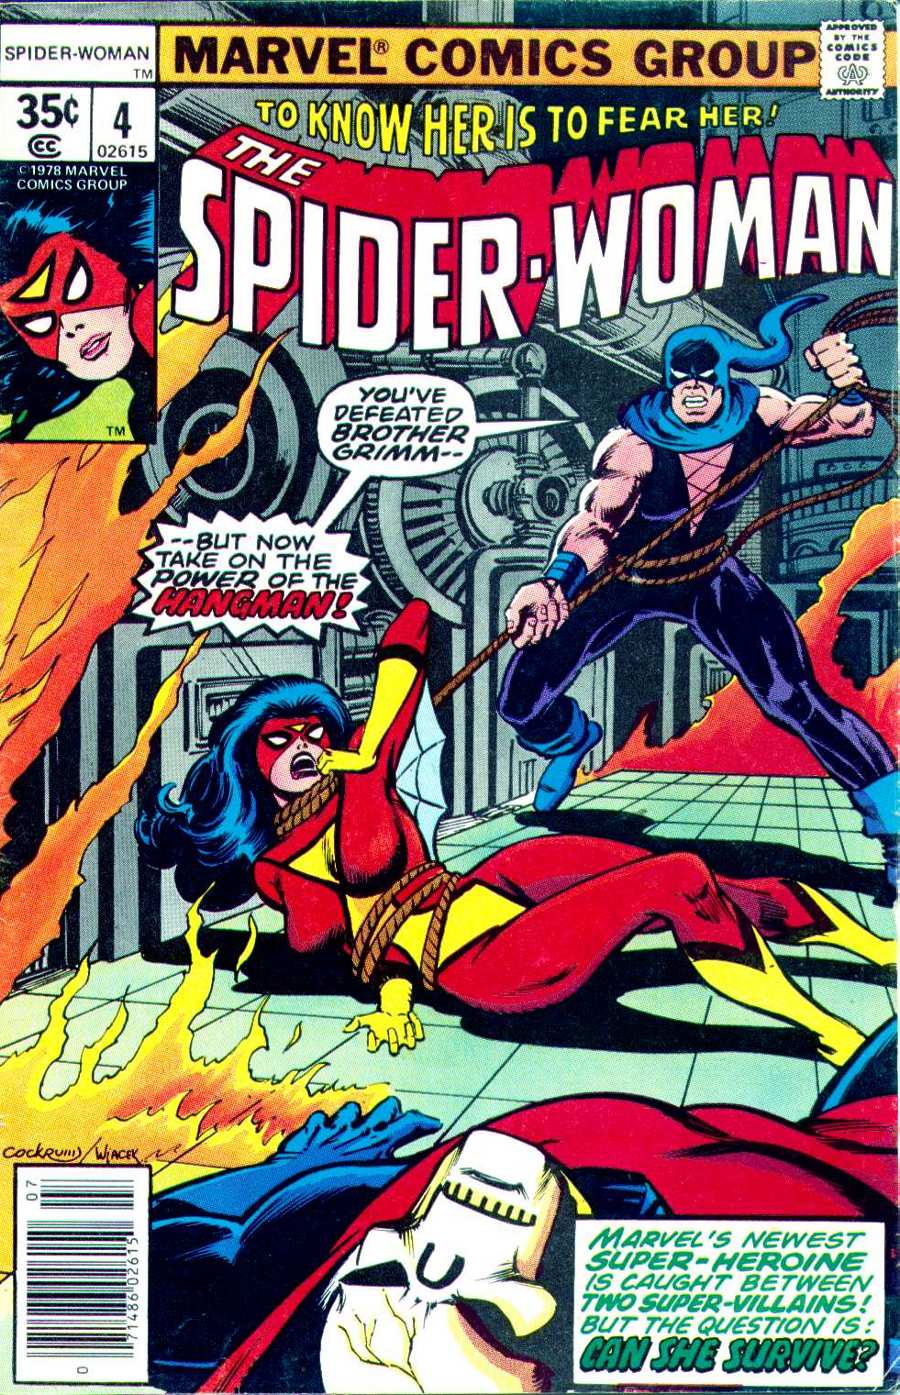 Portada de Spider-Woman 4 en la que vemos que the Hangman la tiene atada con su cuerda.